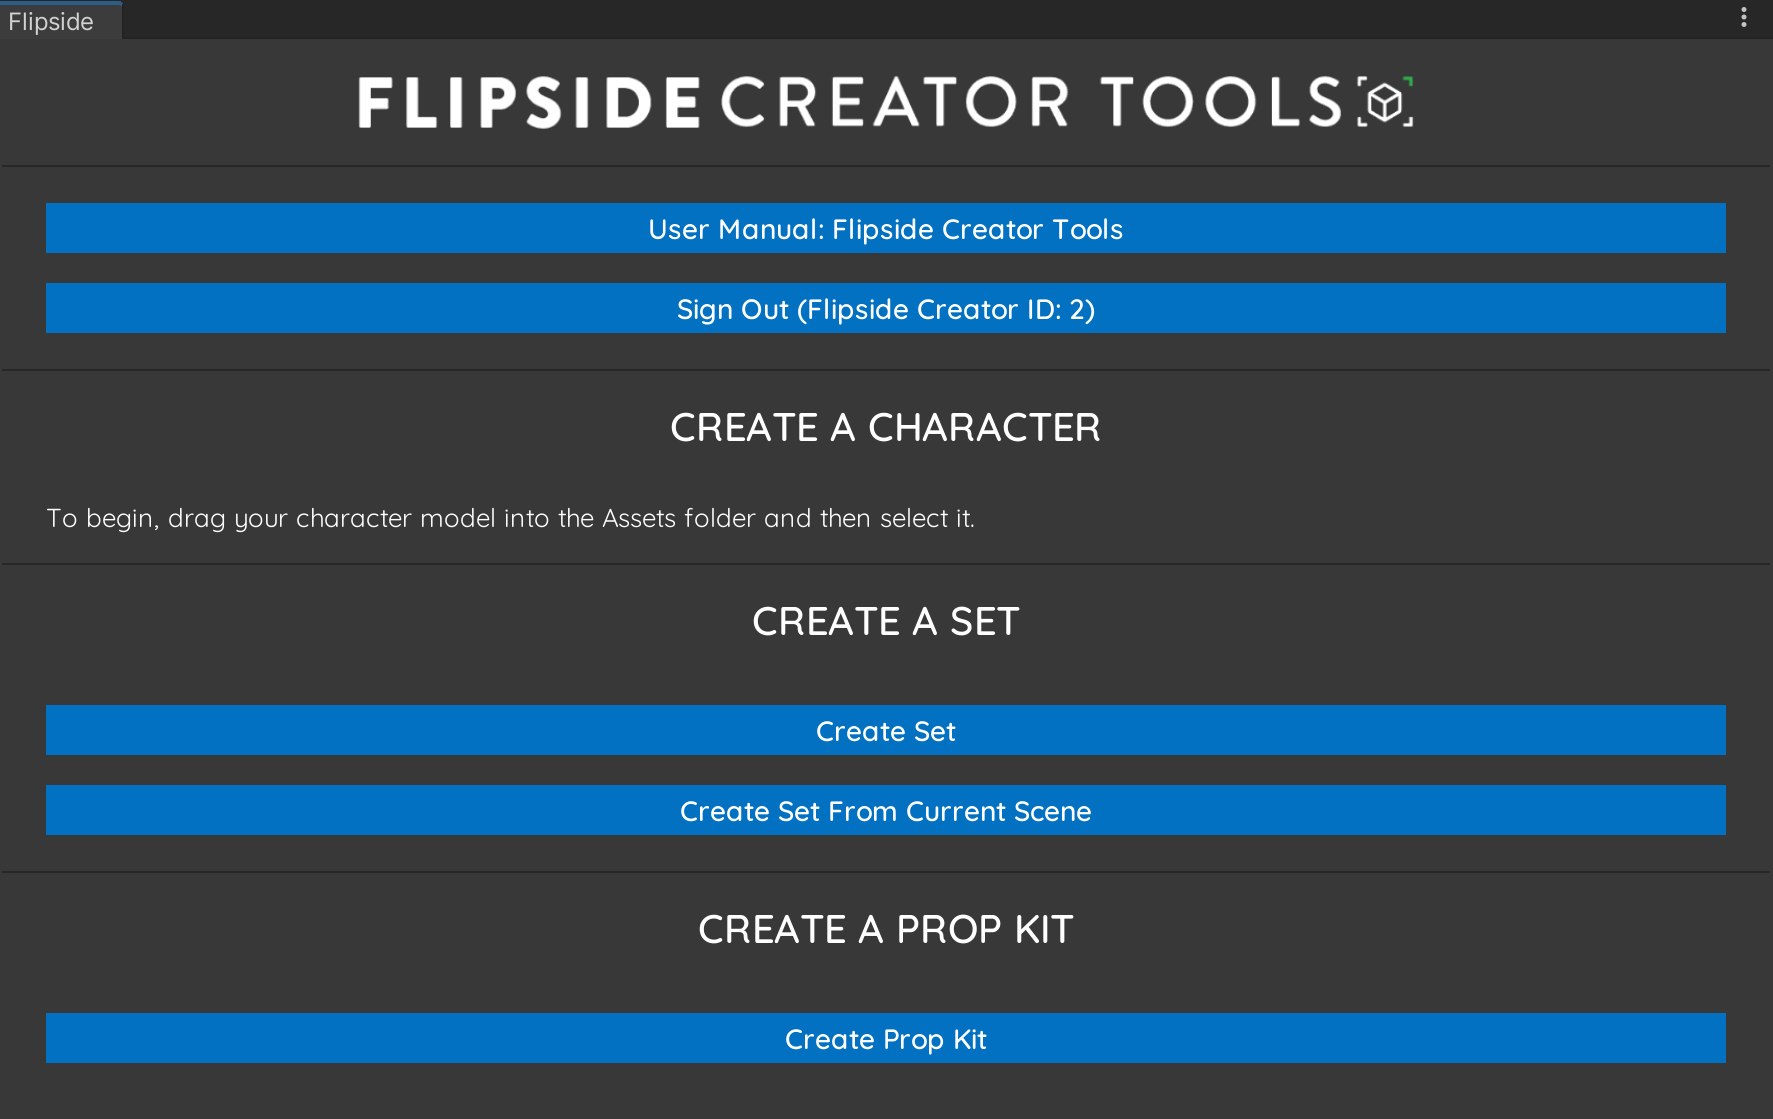 Flipside Creator Tools wizard